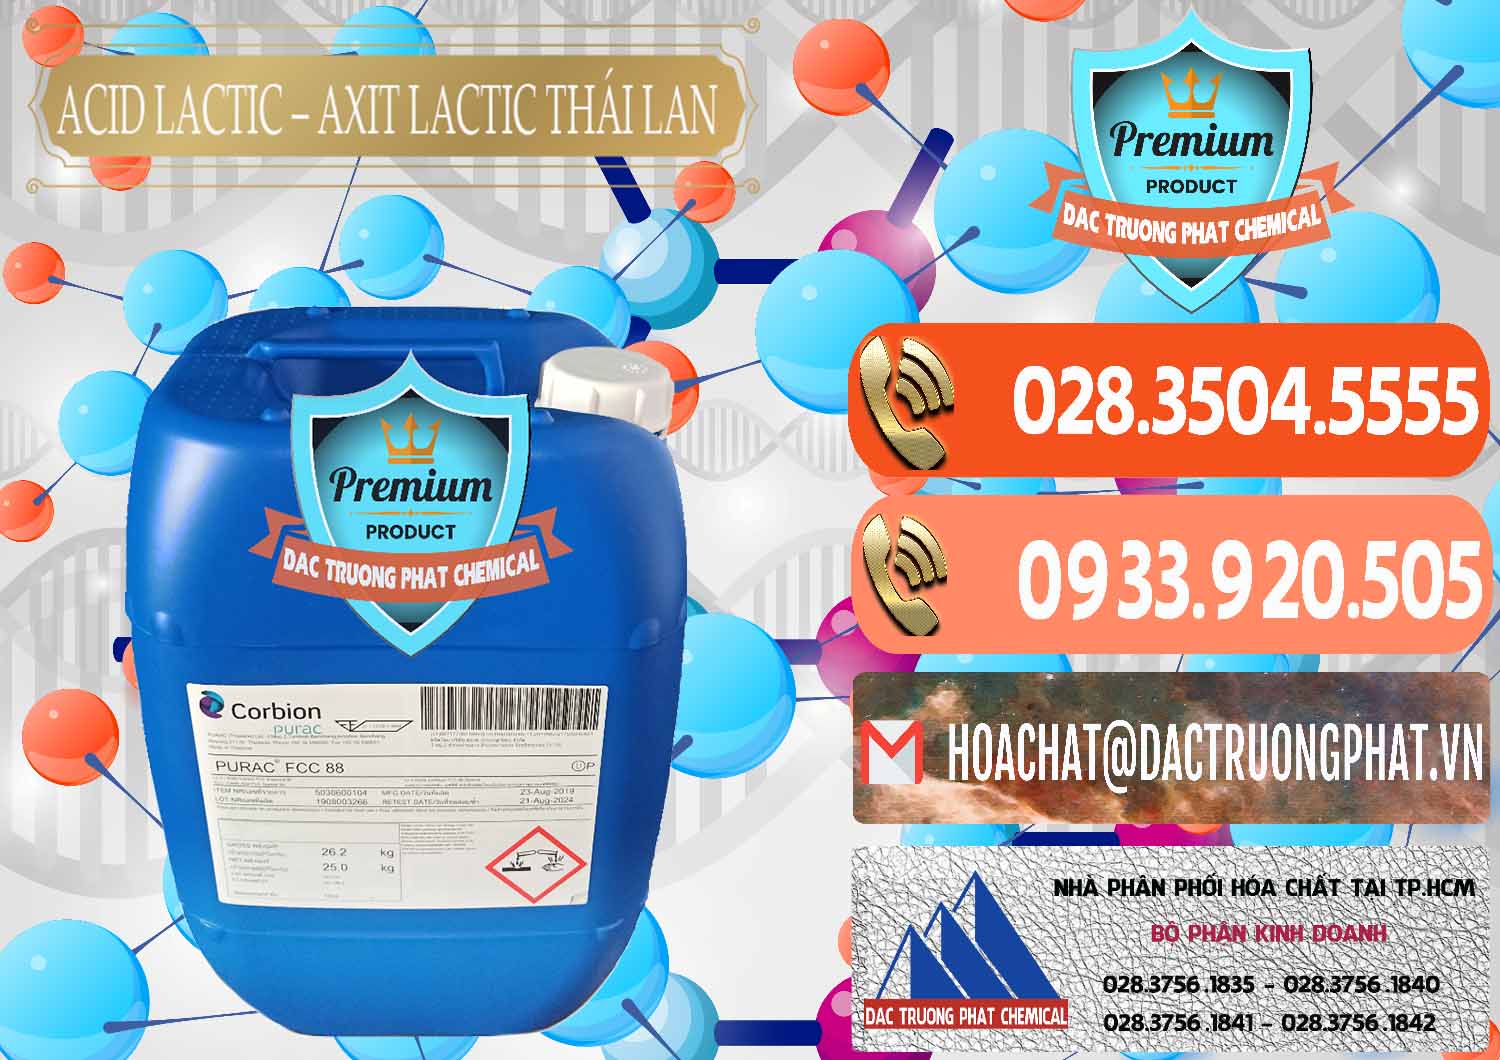 Cung cấp & bán Acid Lactic – Axit Lactic Thái Lan Purac FCC 88 - 0012 - Nơi chuyên nhập khẩu và phân phối hóa chất tại TP.HCM - hoachatmientay.com